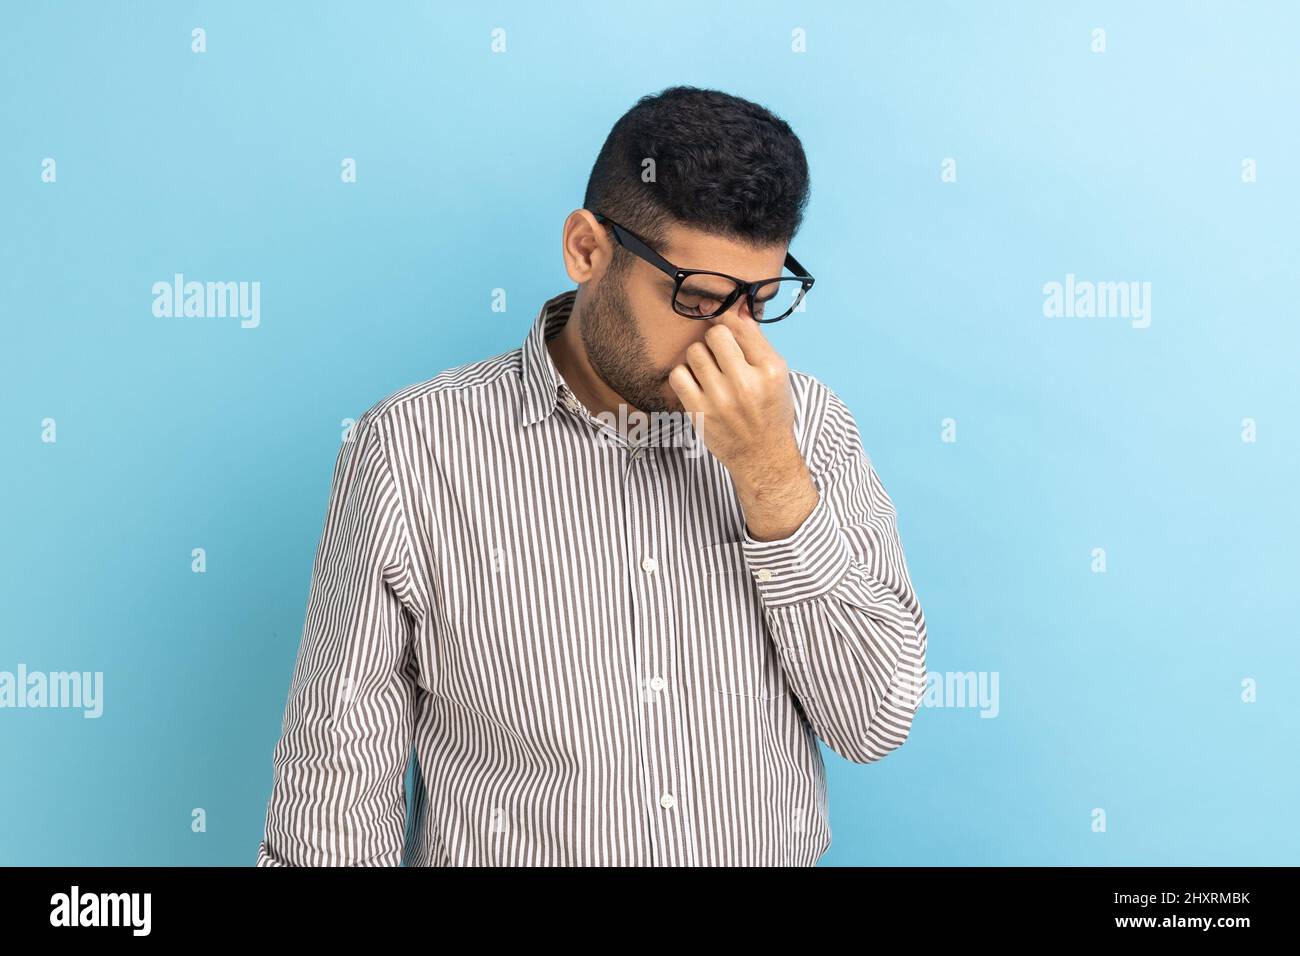 Portrait d'un homme d'affaires frustré dans des lunettes se frottant les yeux, étant fatigué de longues heures de travail sur ordinateur portable, douleur ou douleur, portant une chemise rayée. Studio d'intérieur isolé sur fond bleu. Banque D'Images